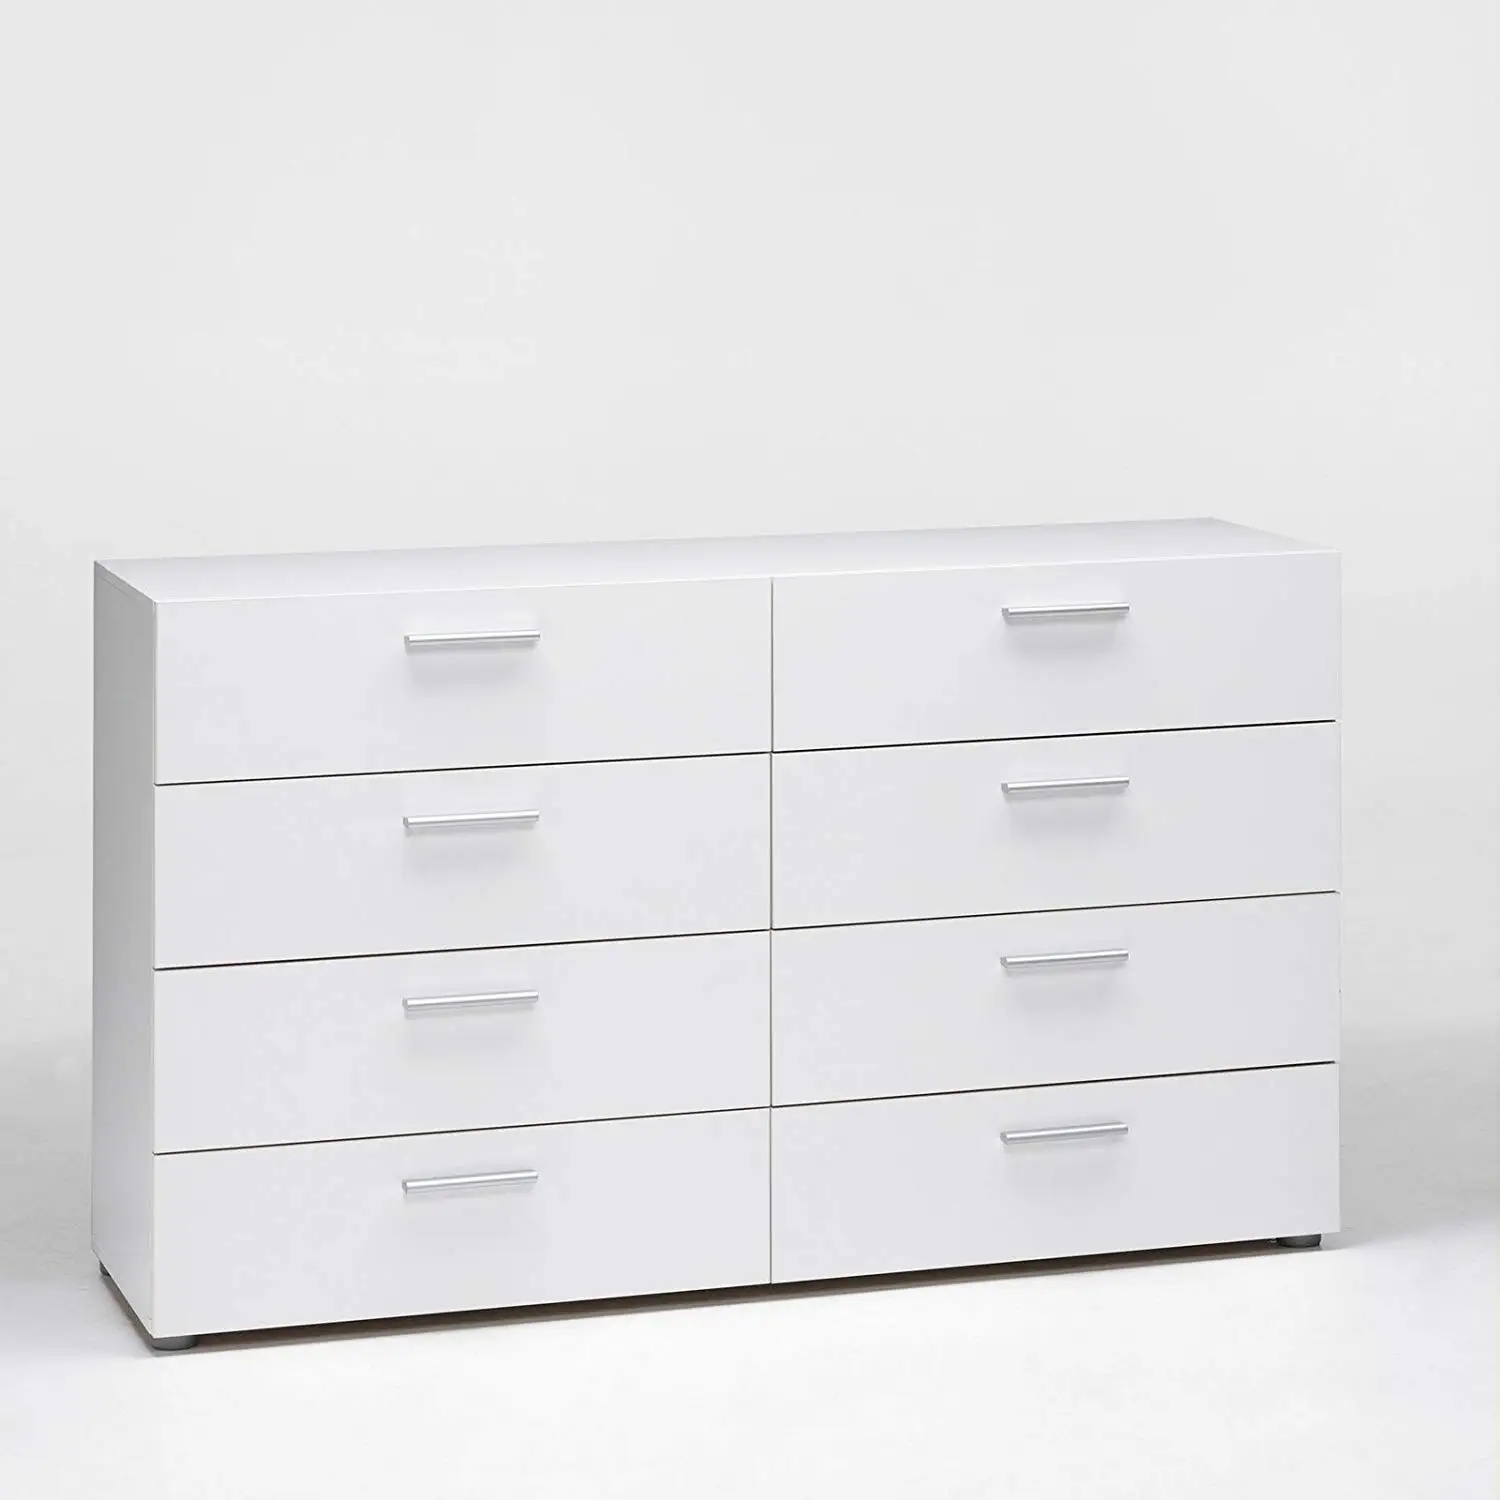 Cheap Modern Dresser Hardware Find Modern Dresser Hardware Deals